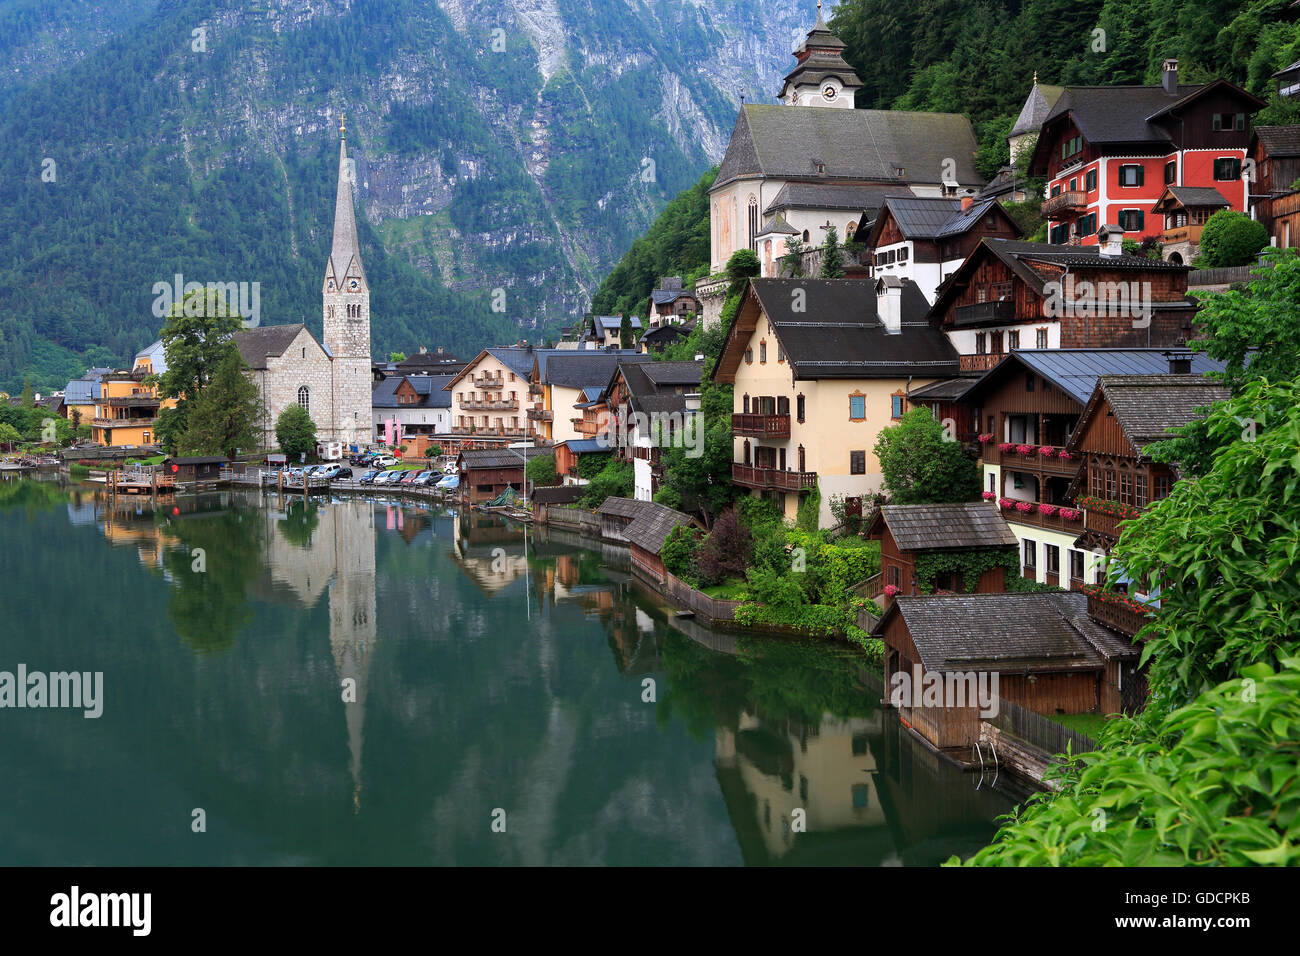 Village de Hallstatt réflexions dans le lac, Autriche Banque D'Images